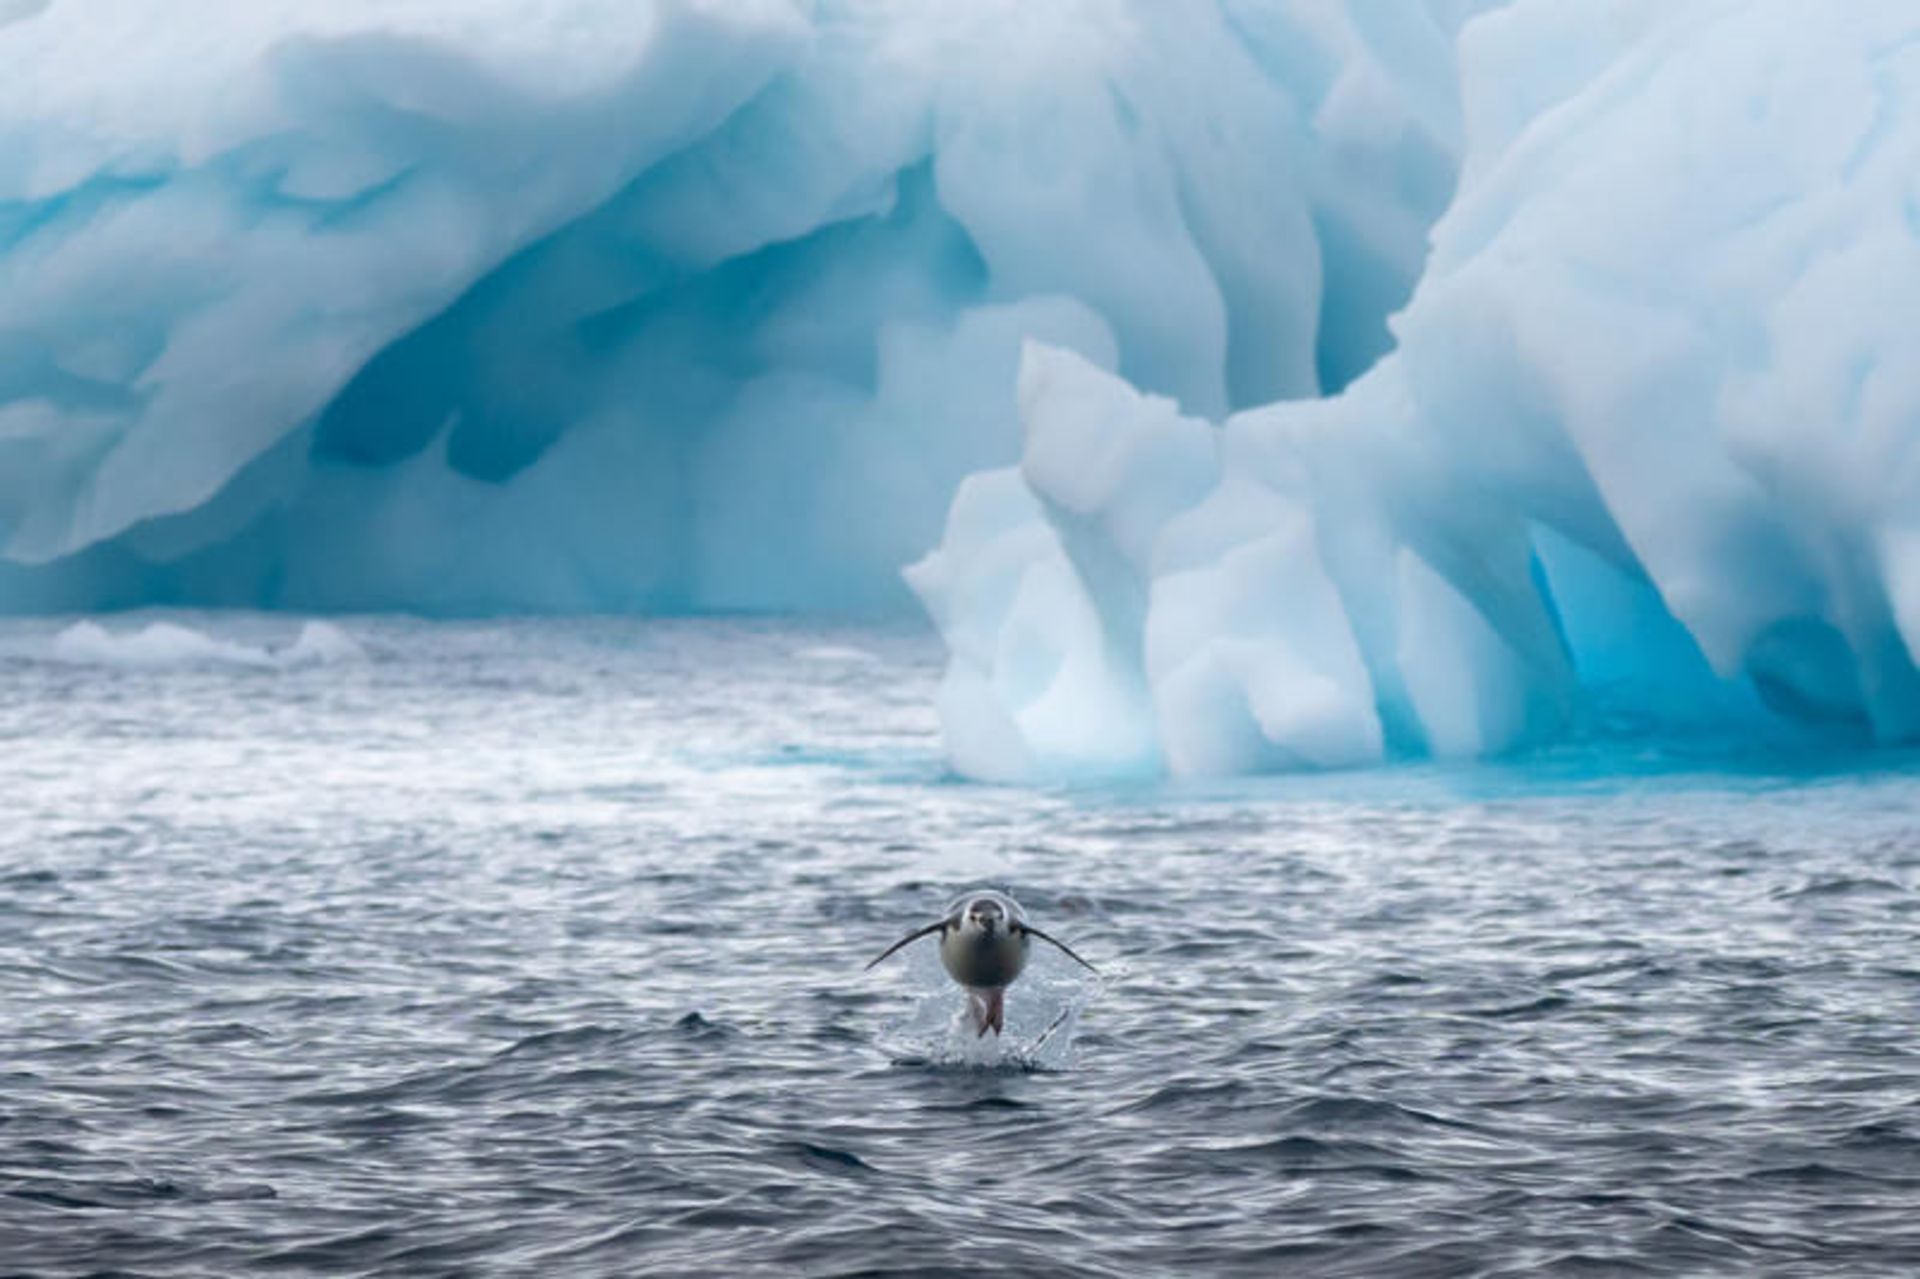 مرجع متخصصين ايران پنگوئن در حال شنا و پريدن